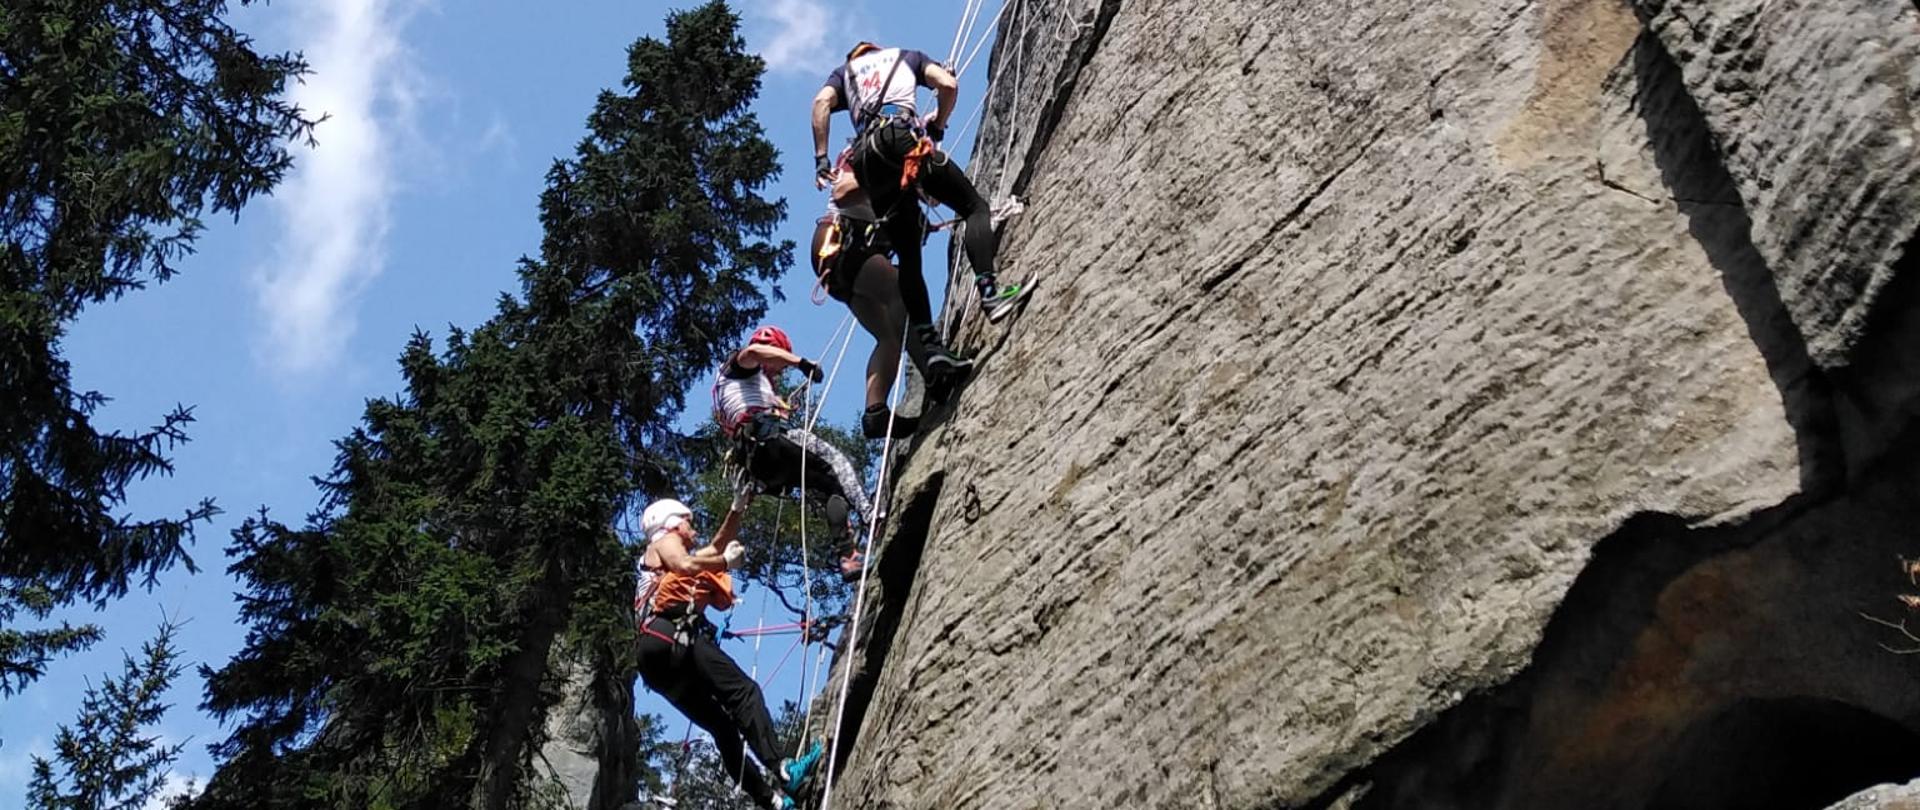 Ratownicy wysokościowi schodzący na linach ze skały